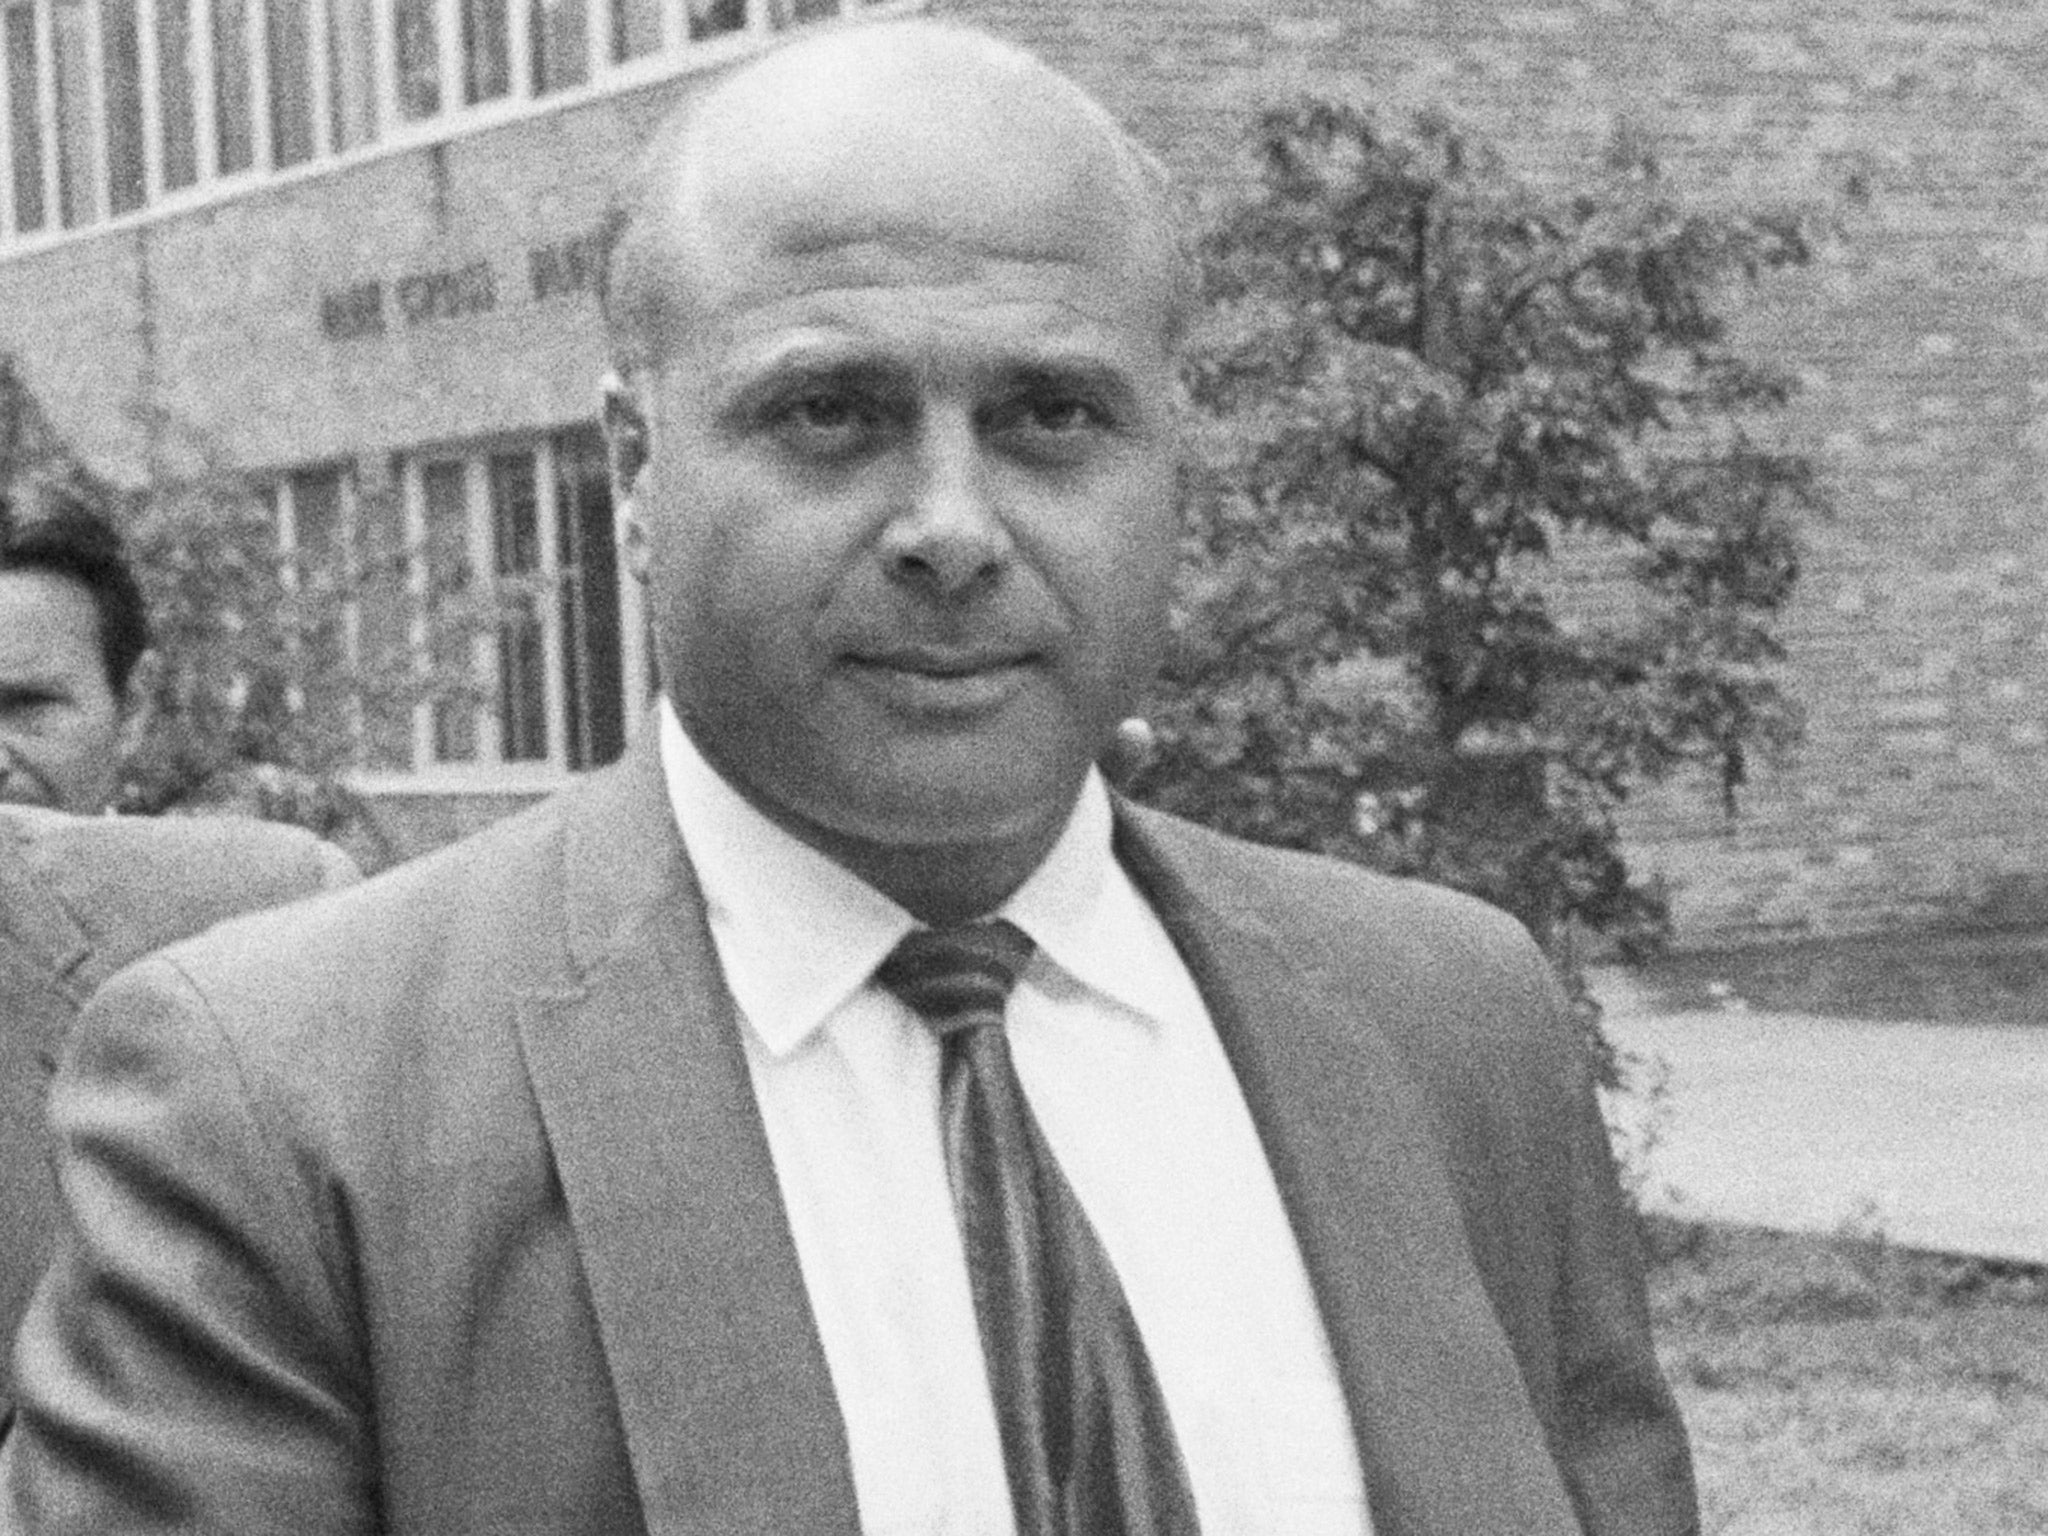 DeCavalcante boss John Riggi, pictured in 1969